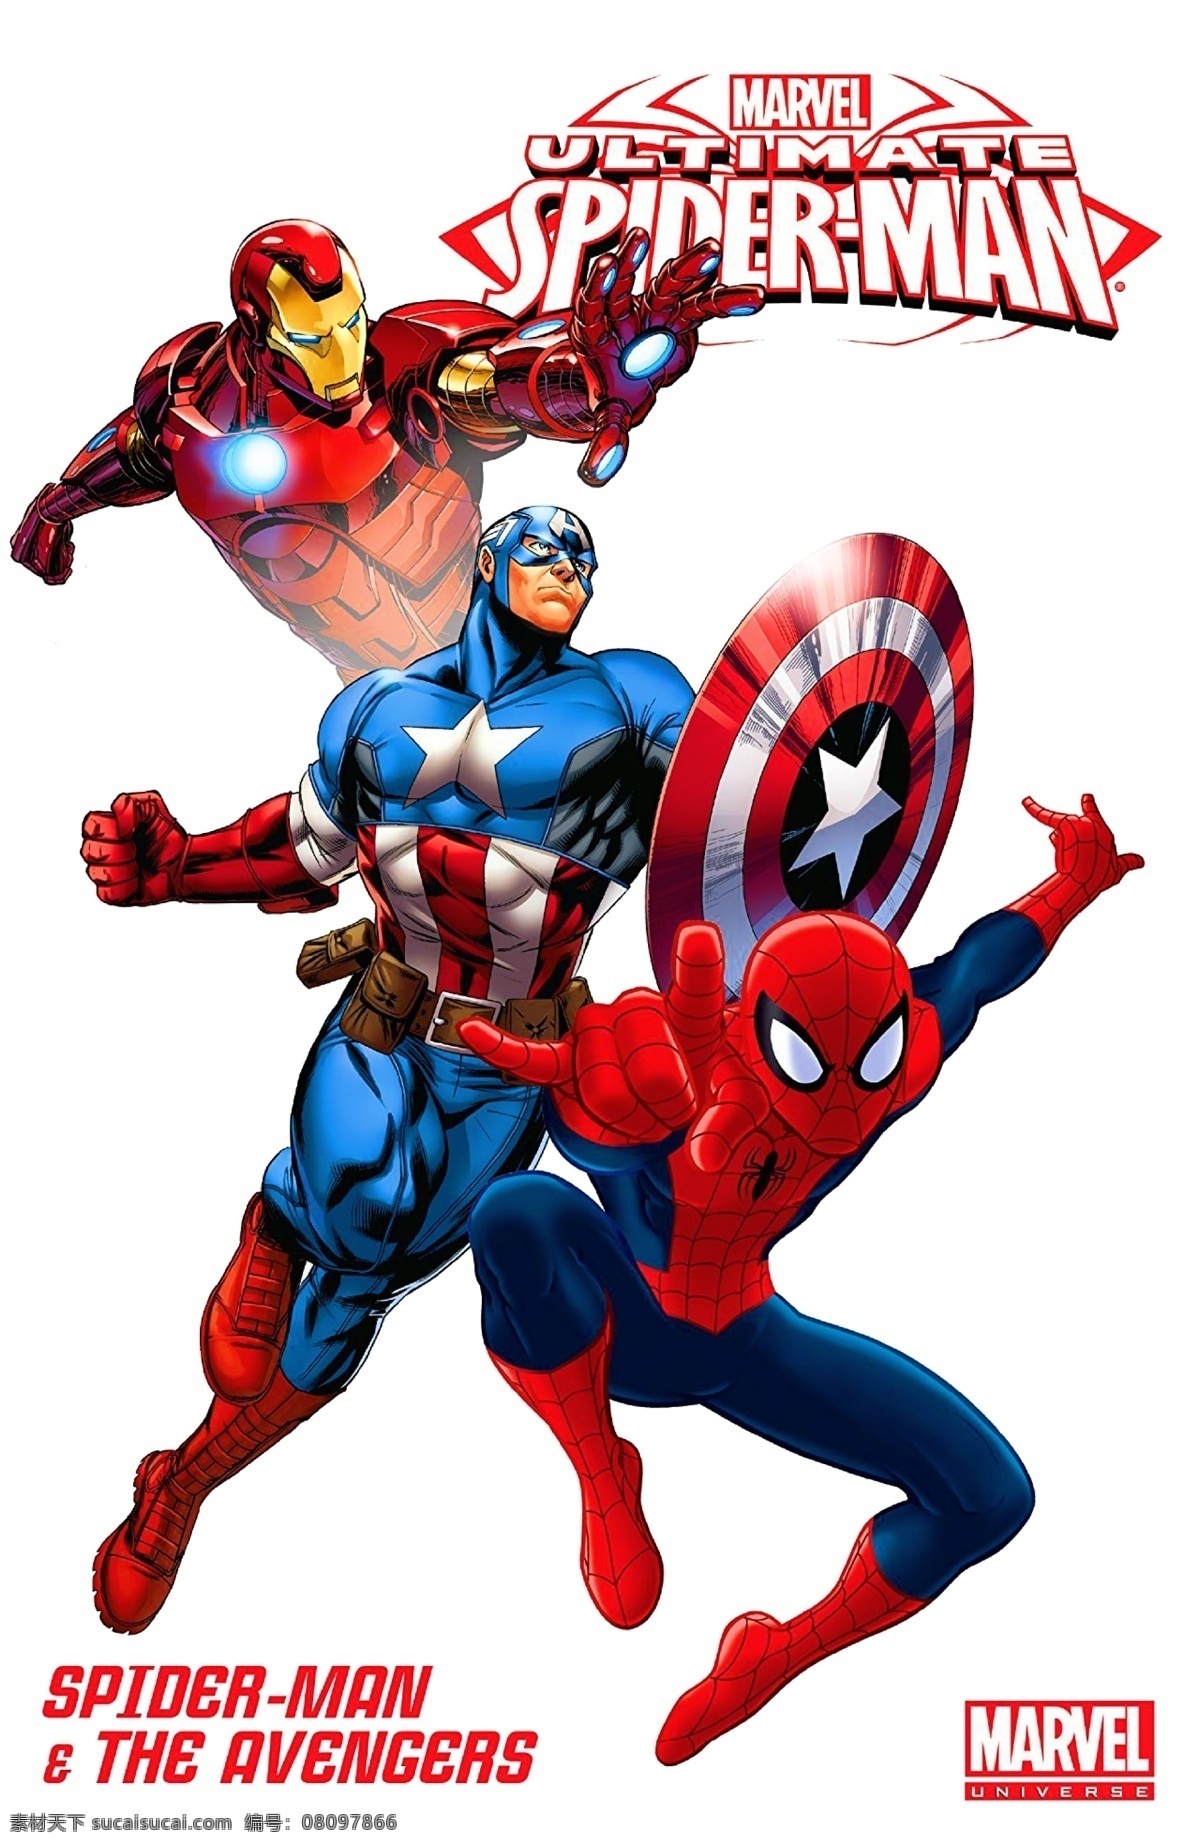 漫 威 英雄 蜘蛛侠 钢铁 侠 美国 队长 漫威 超级英雄 钢铁侠 美国队长 服装印花 图案设计 动漫动画